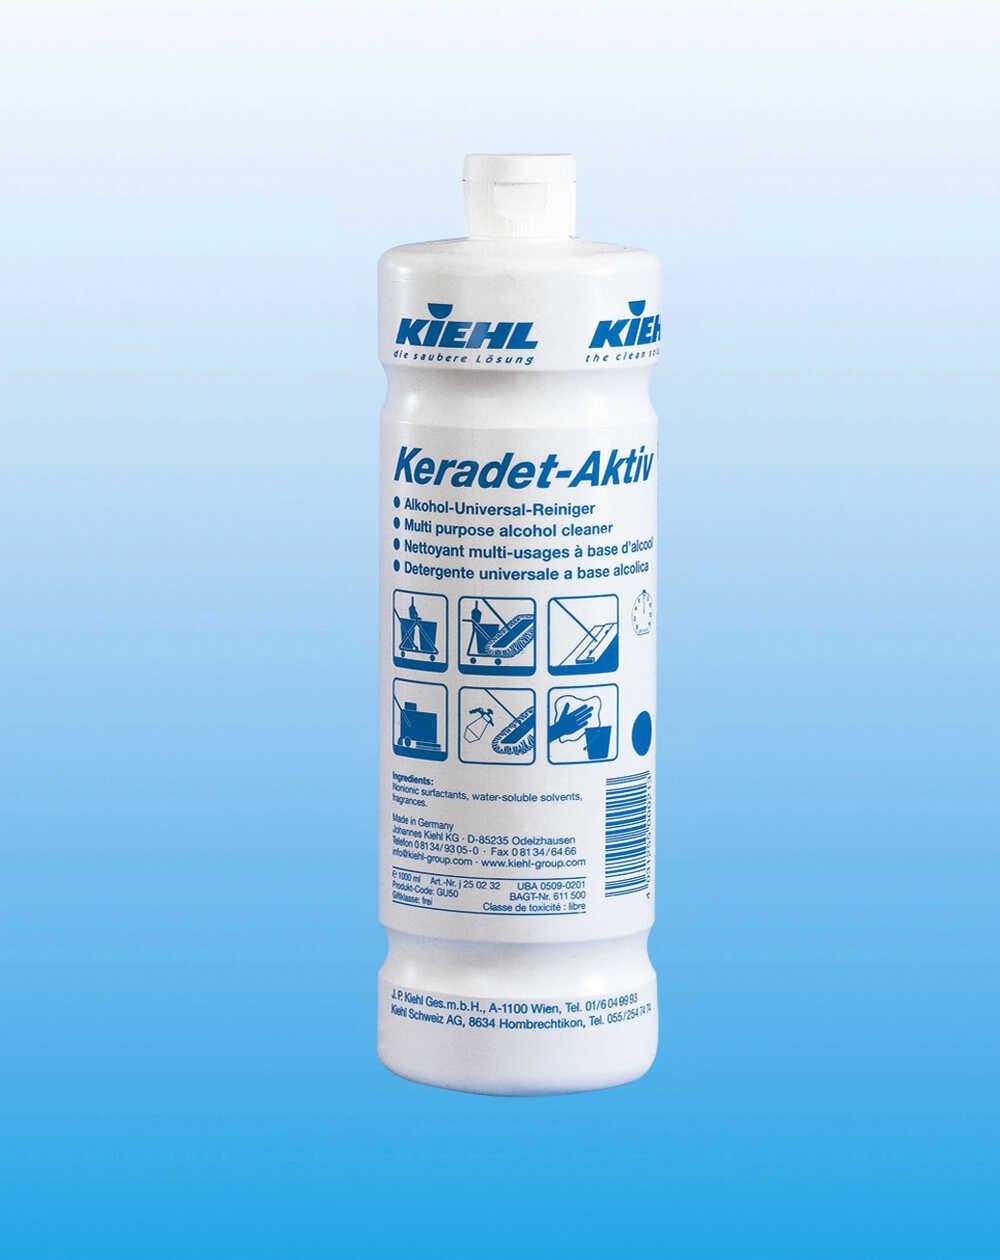 Універсальний спиртовий очищувач Keradet-Aktiv (вікна, підлоги, водостійкі поверхні), 1л